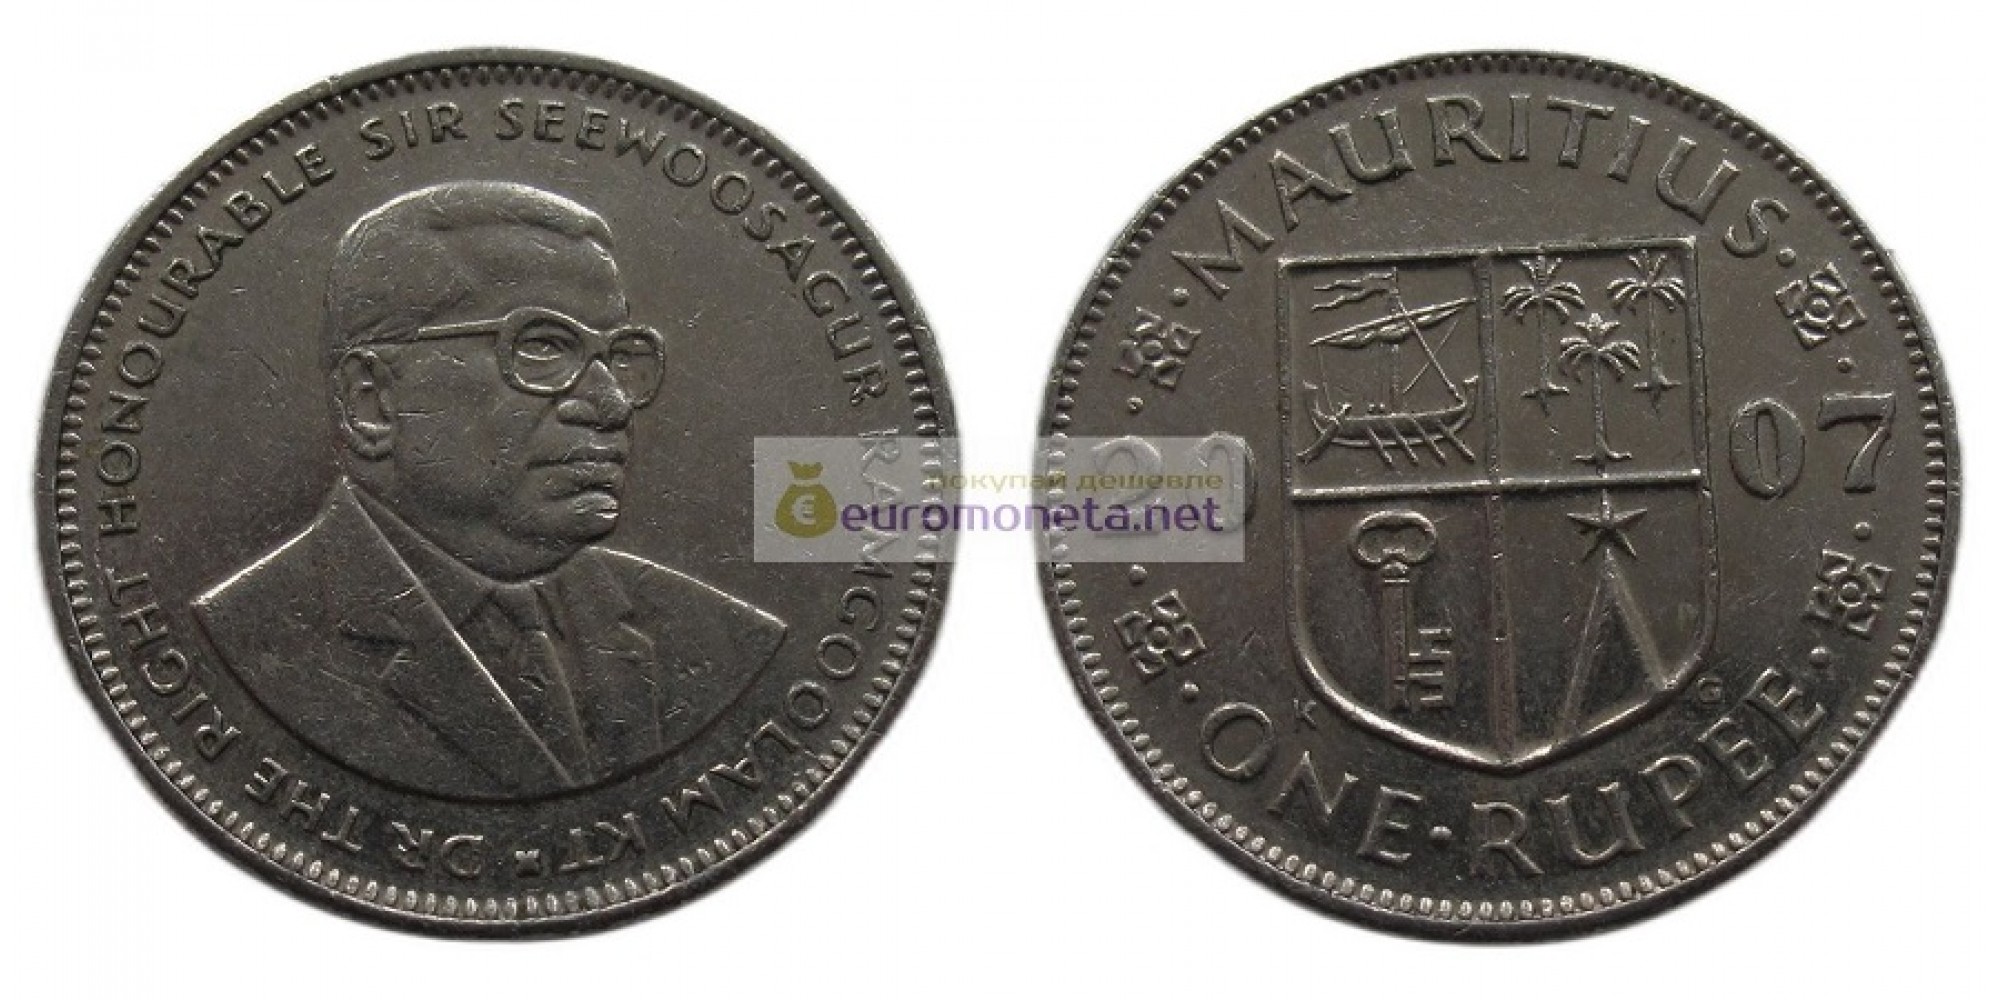 Республика Маврикий 1 рупия 2007 год. Сивусагур Рамгулам